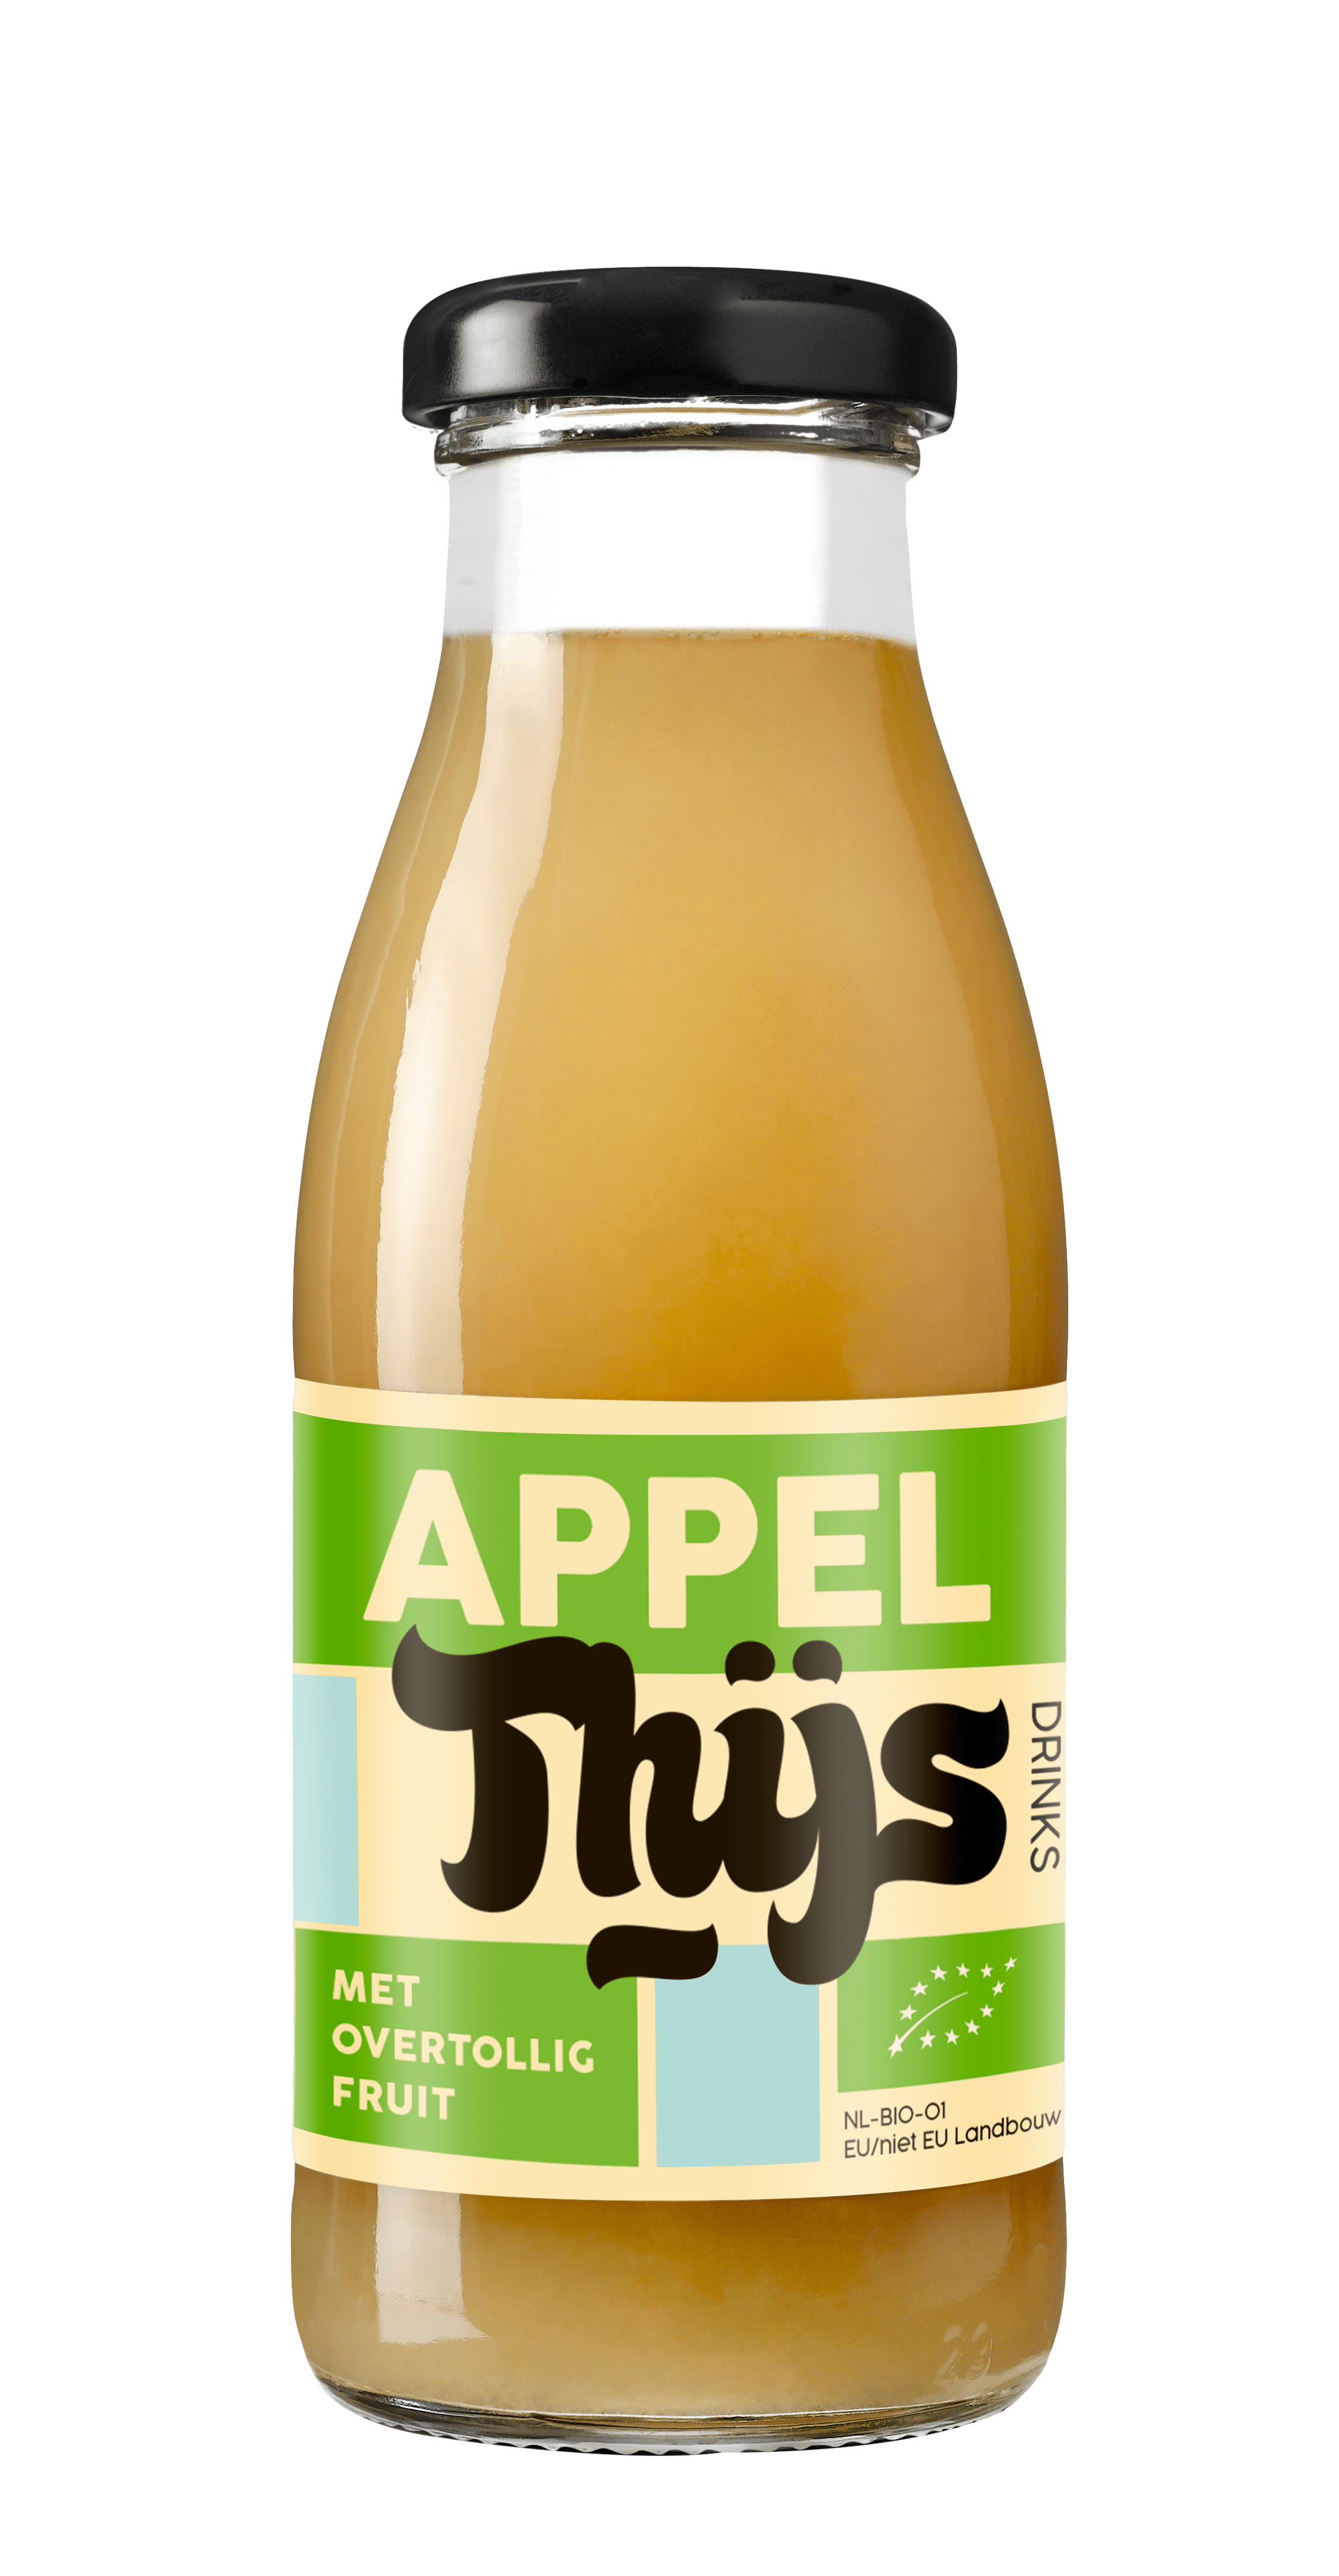 Bottle of apple juice by THIJS drinks